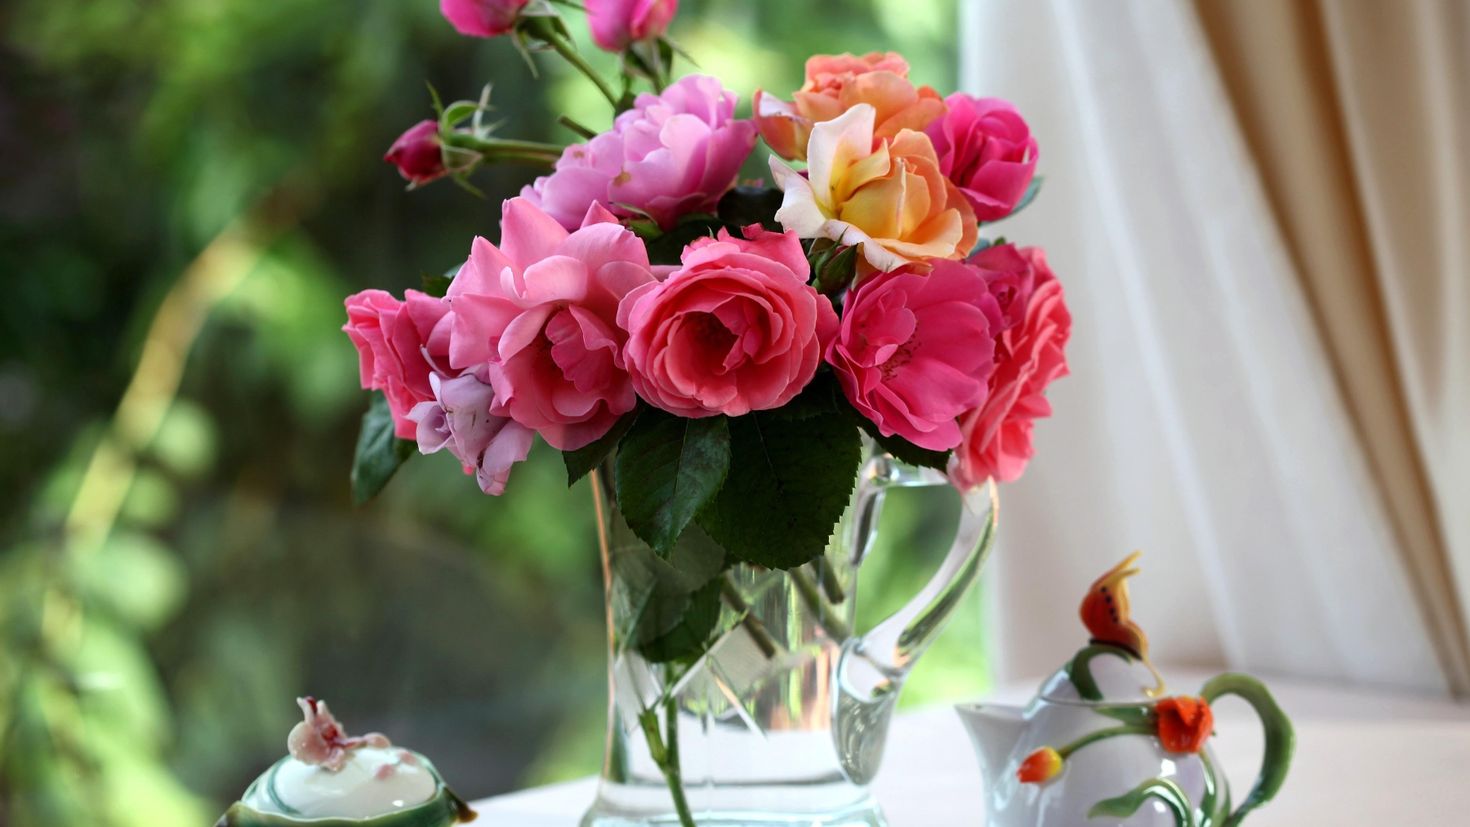 Картинка с цветами на столе. Красивые цветочки. Красивые цветы в вазах. Букет шикарный. Букет цветов в вазе.